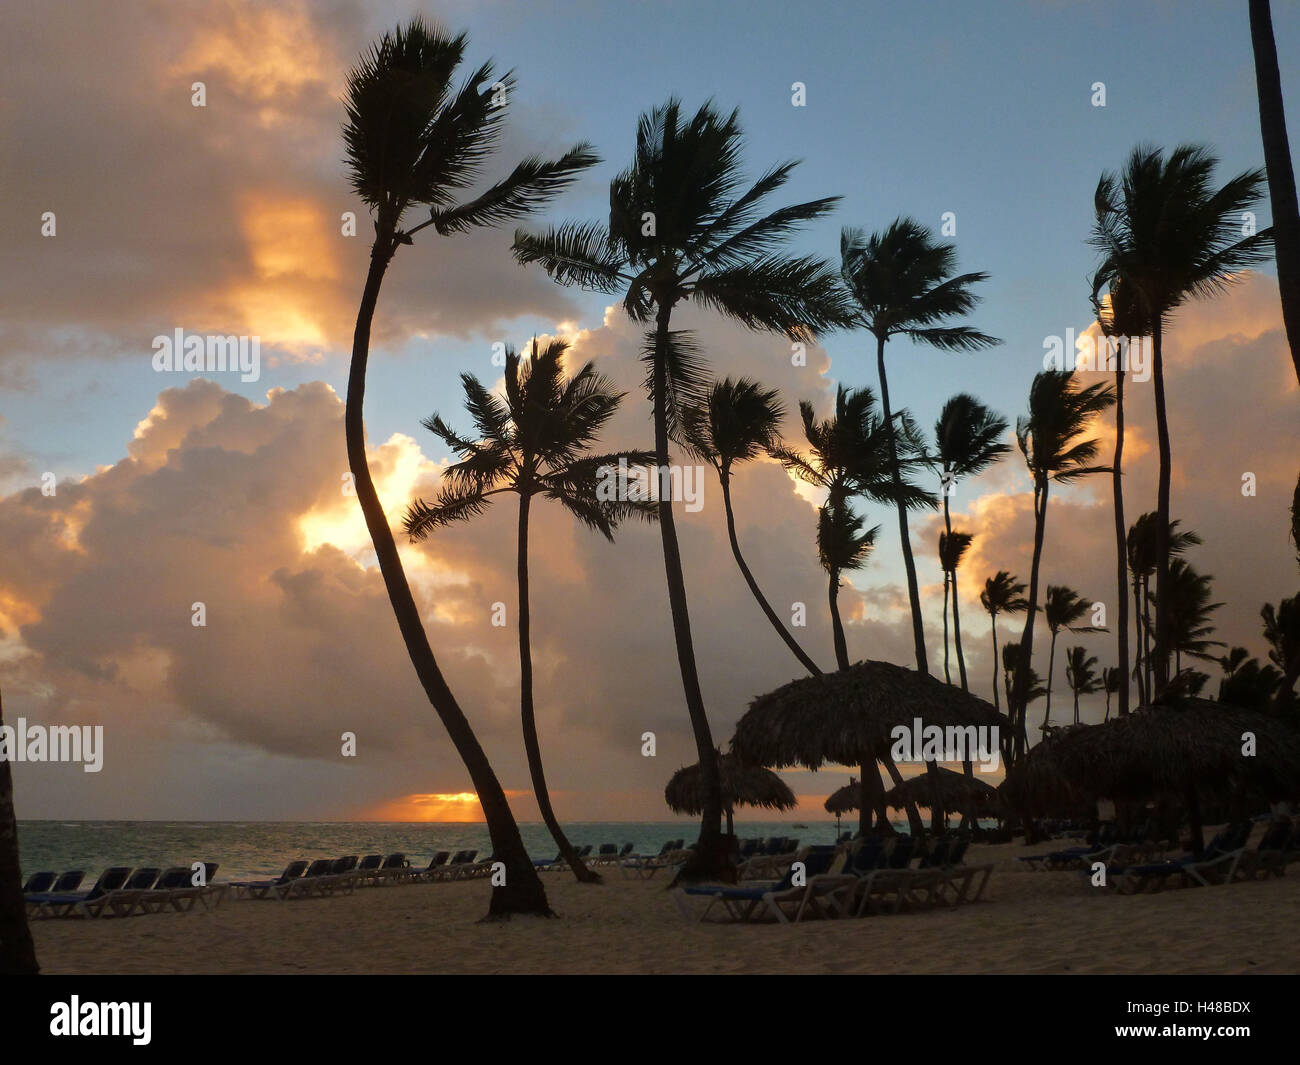 La República Dominicana, Punta Cana, Playa Bávaro, amanecer en el palm beach, magníficas nubes, Foto de stock